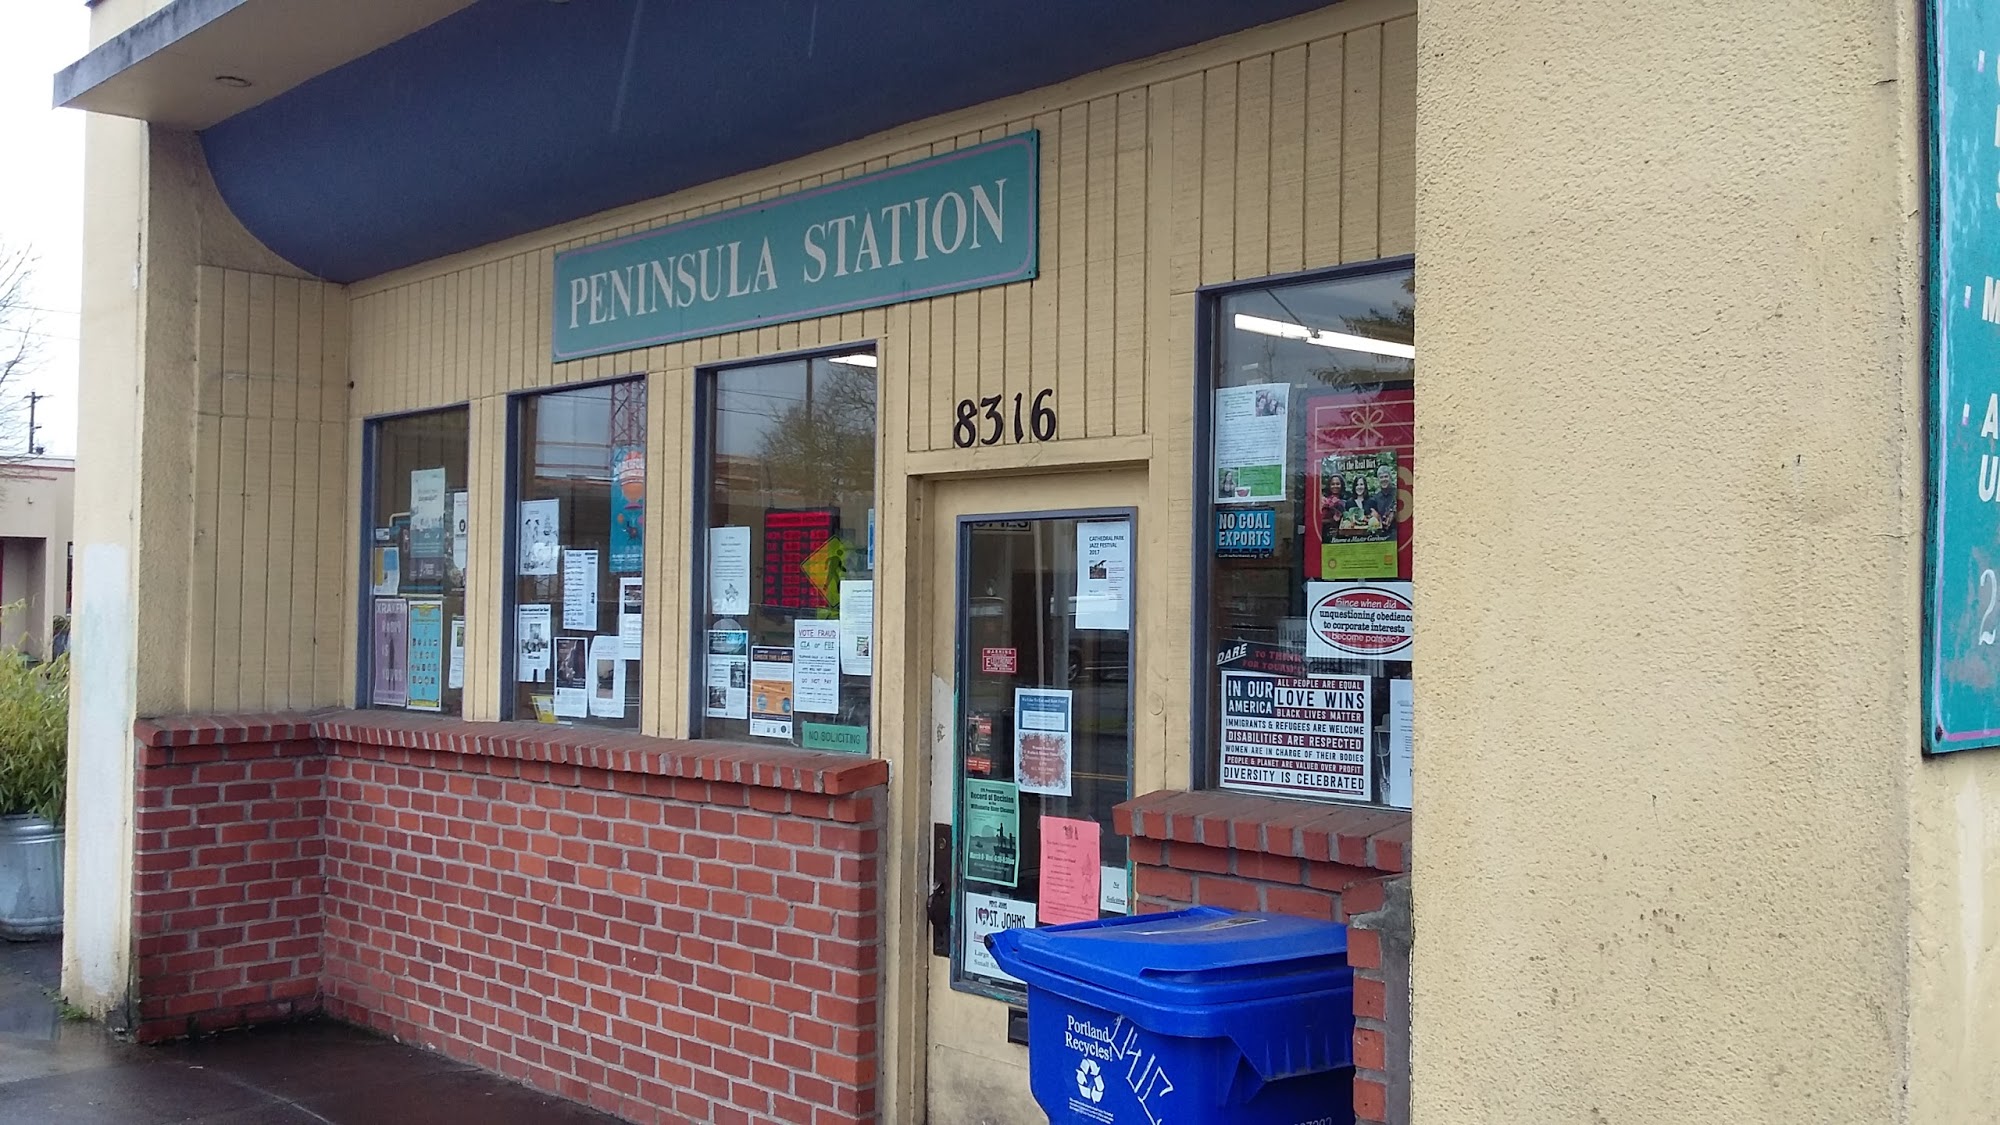 Peninsula Station